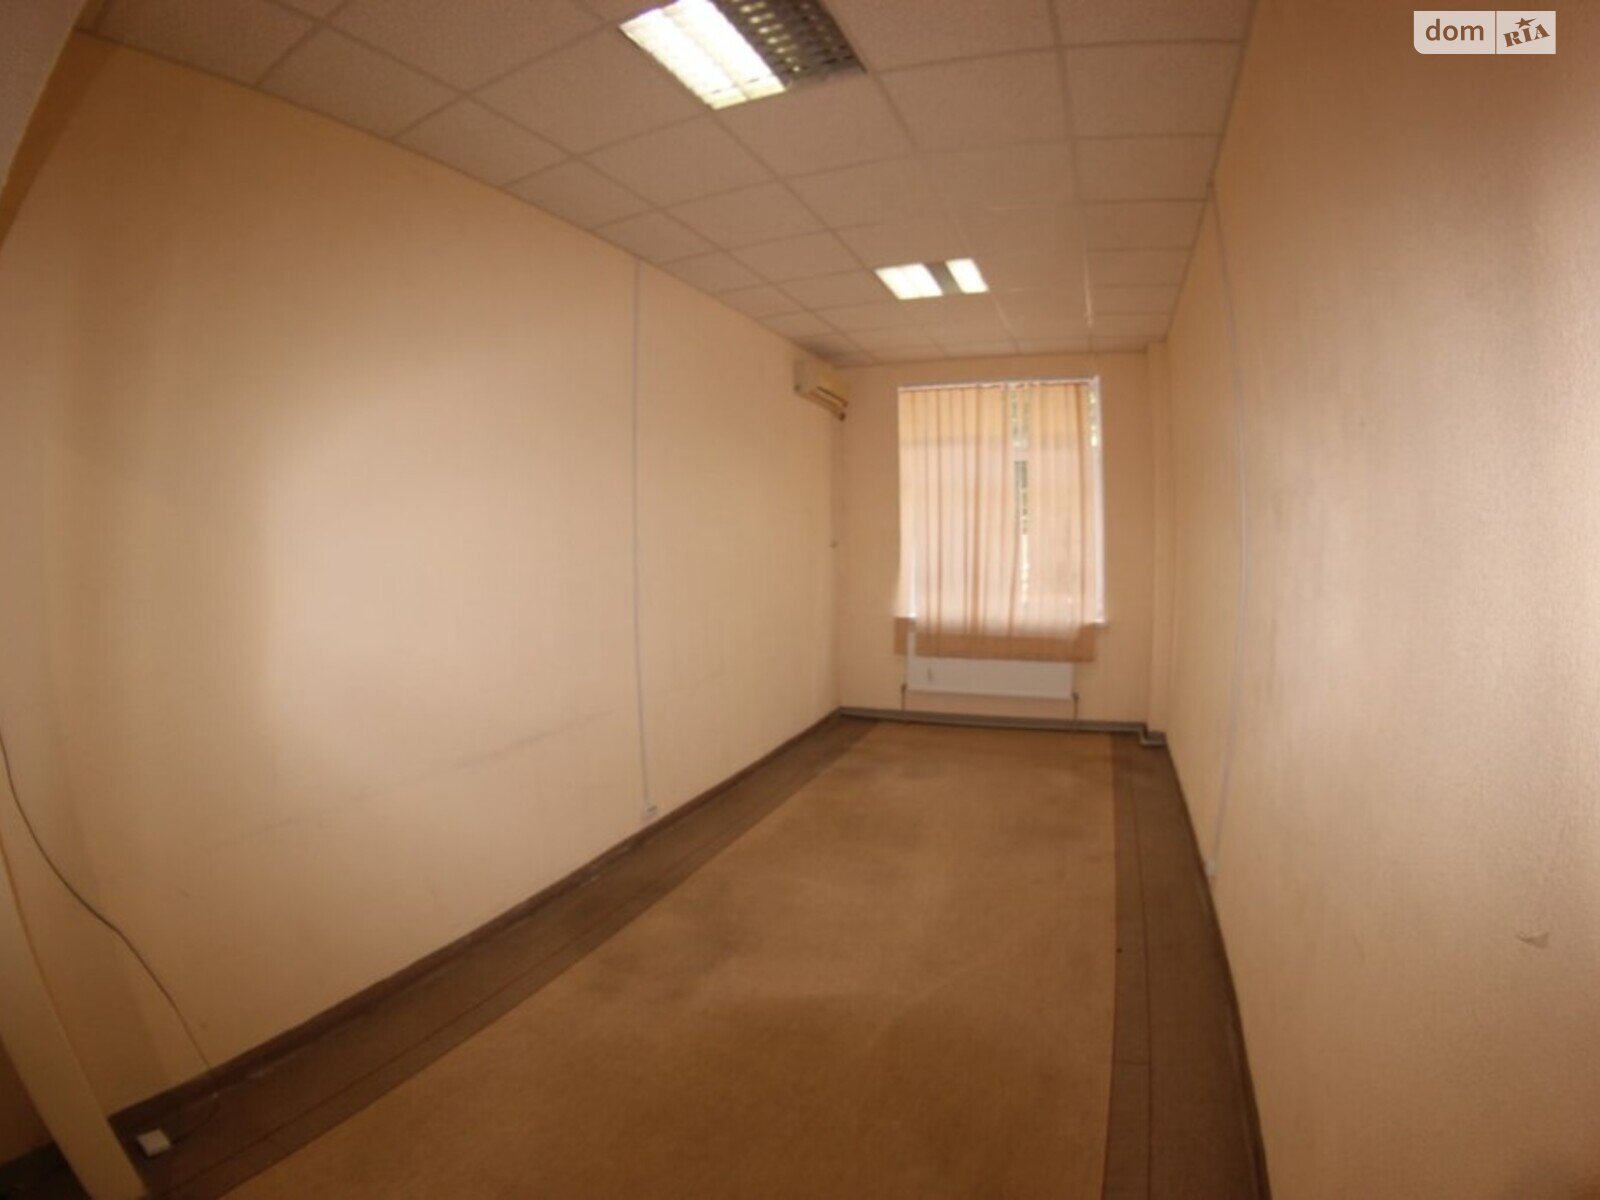 Оренда офісного приміщення в Дніпрі, Ольги княгині вулиця, приміщень - 2, поверх - 1 фото 1